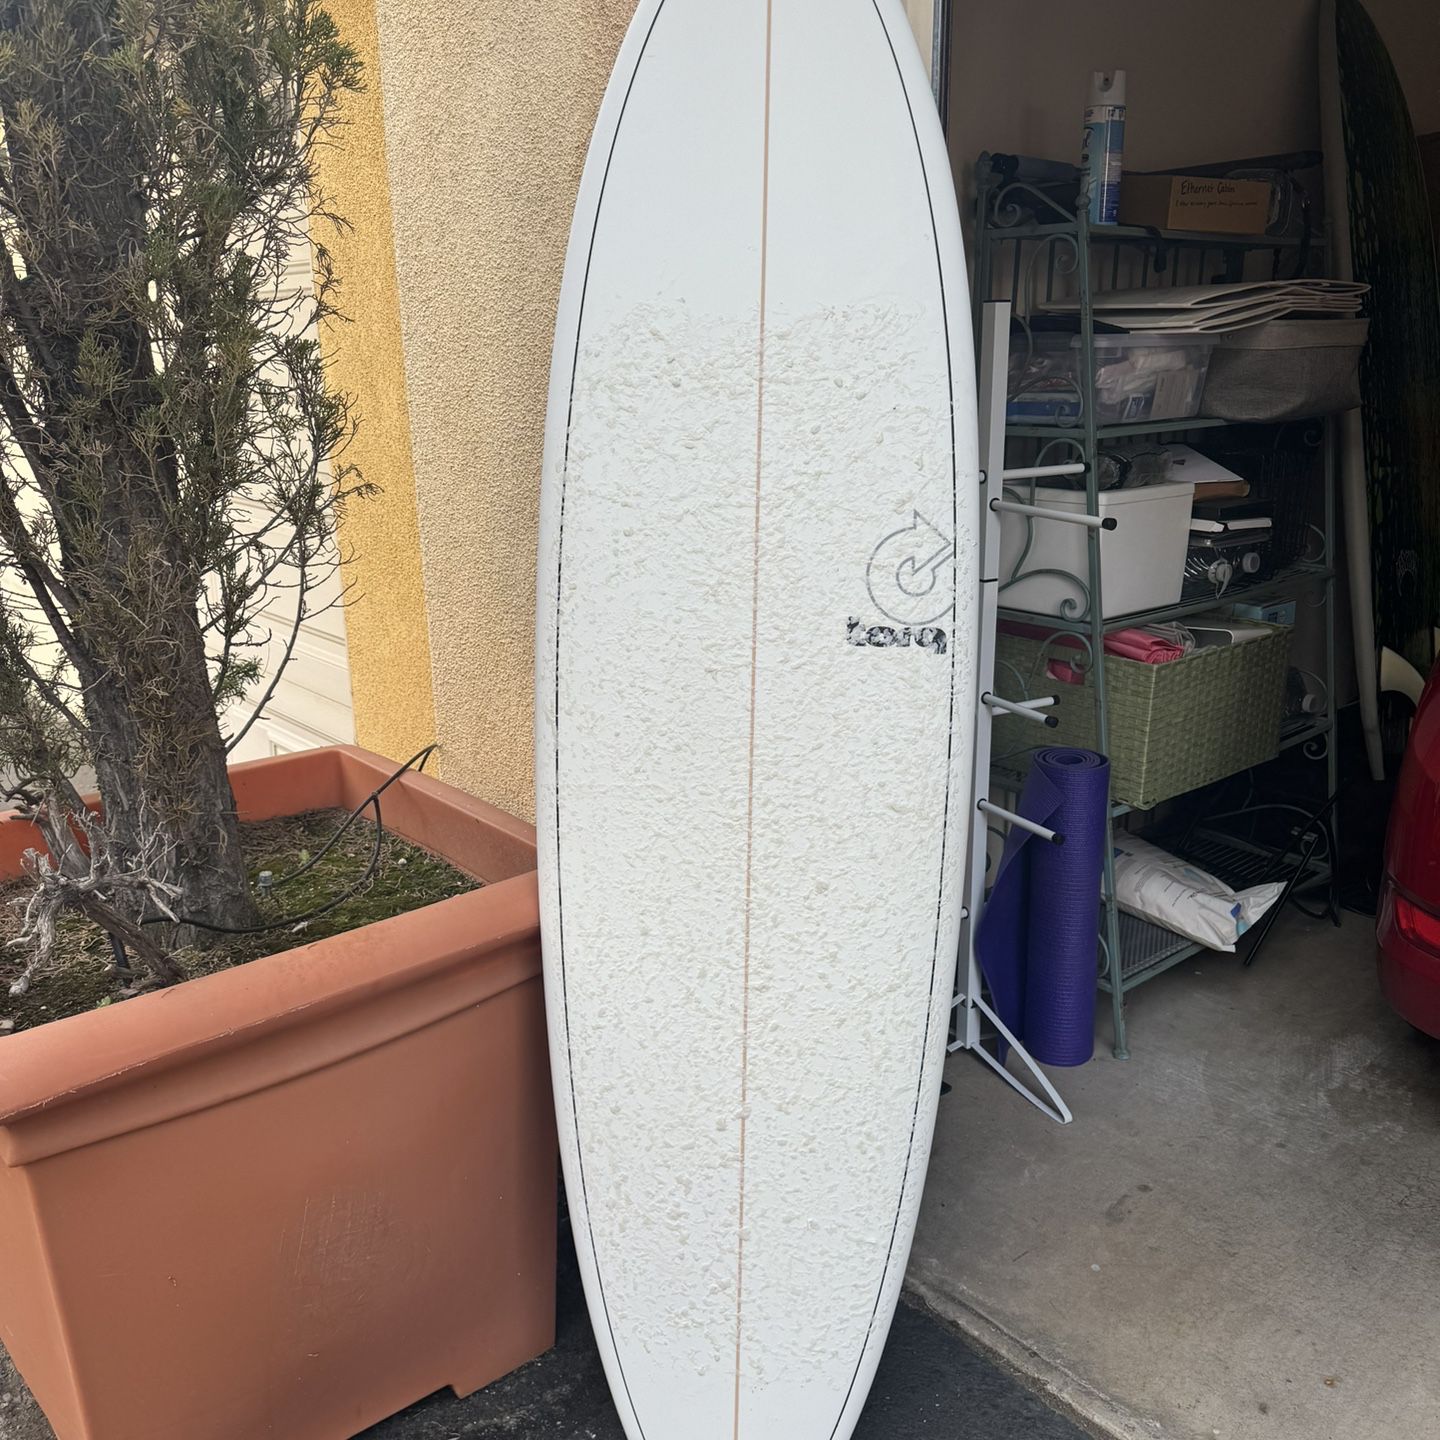  Torq Surfboard  Mod Fish 6’3”